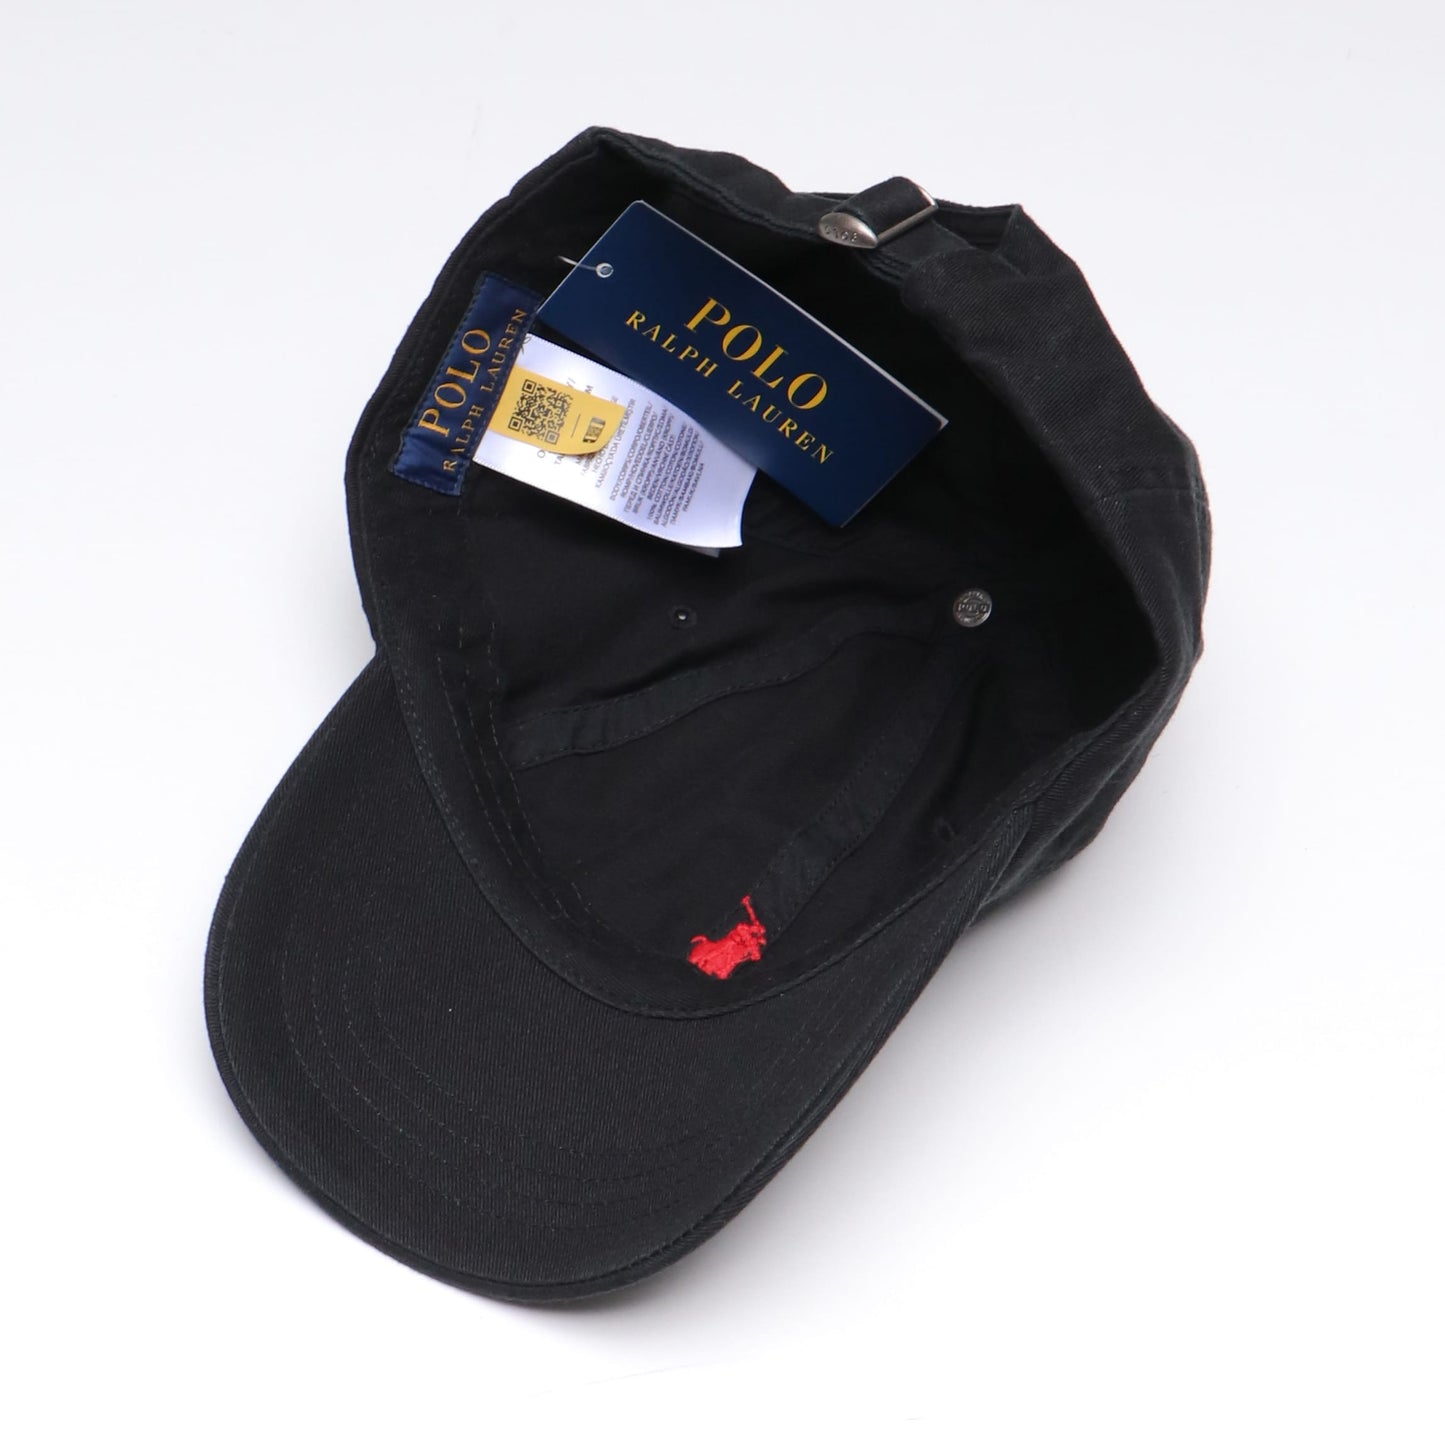 SPORT CAP-HAT